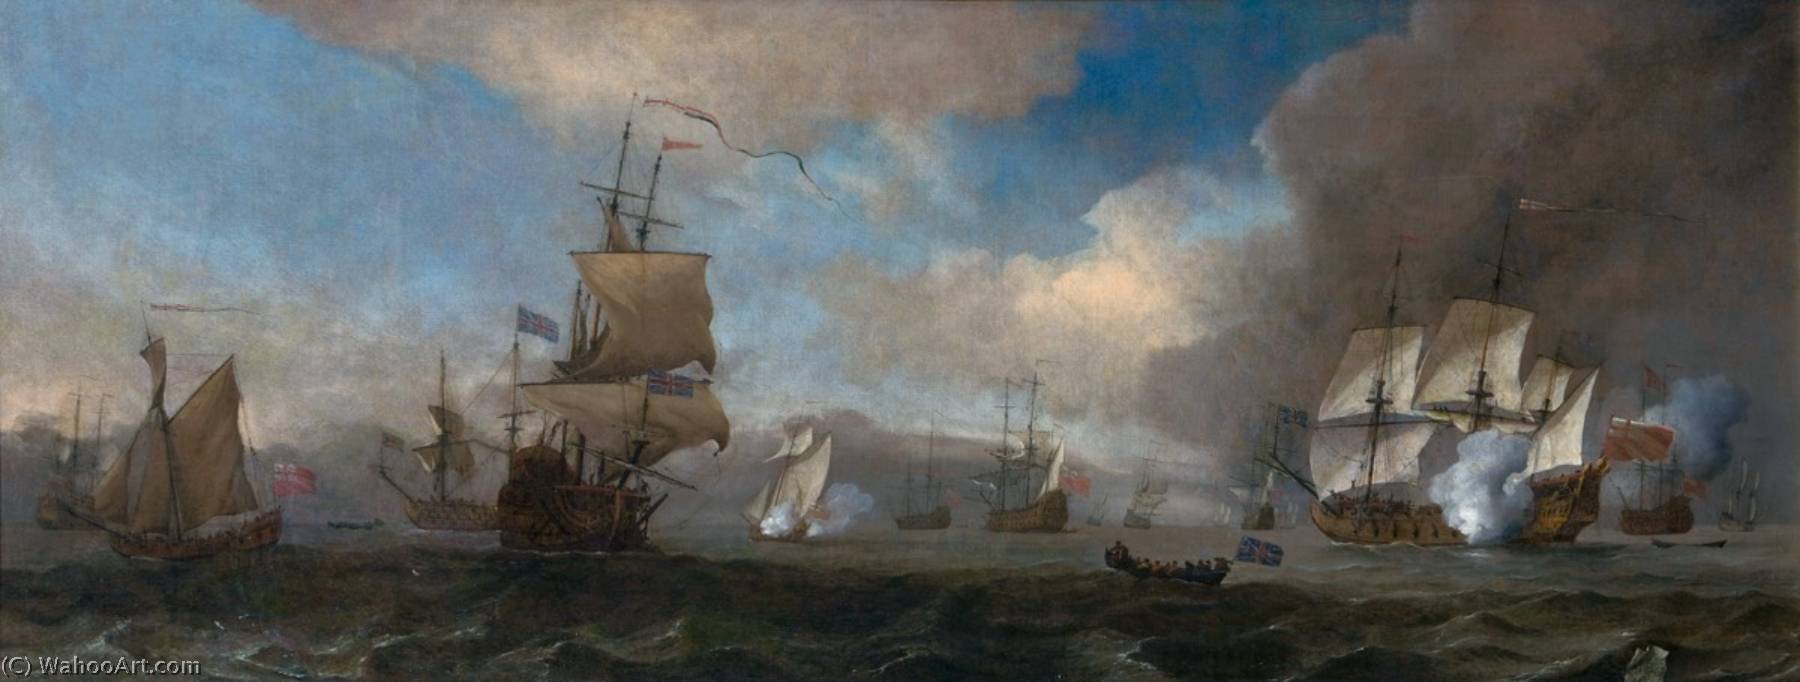 WikiOO.org - 백과 사전 - 회화, 삽화 Willem Van De Velde The Elder - The Battle of Solebay, 26 May 1672